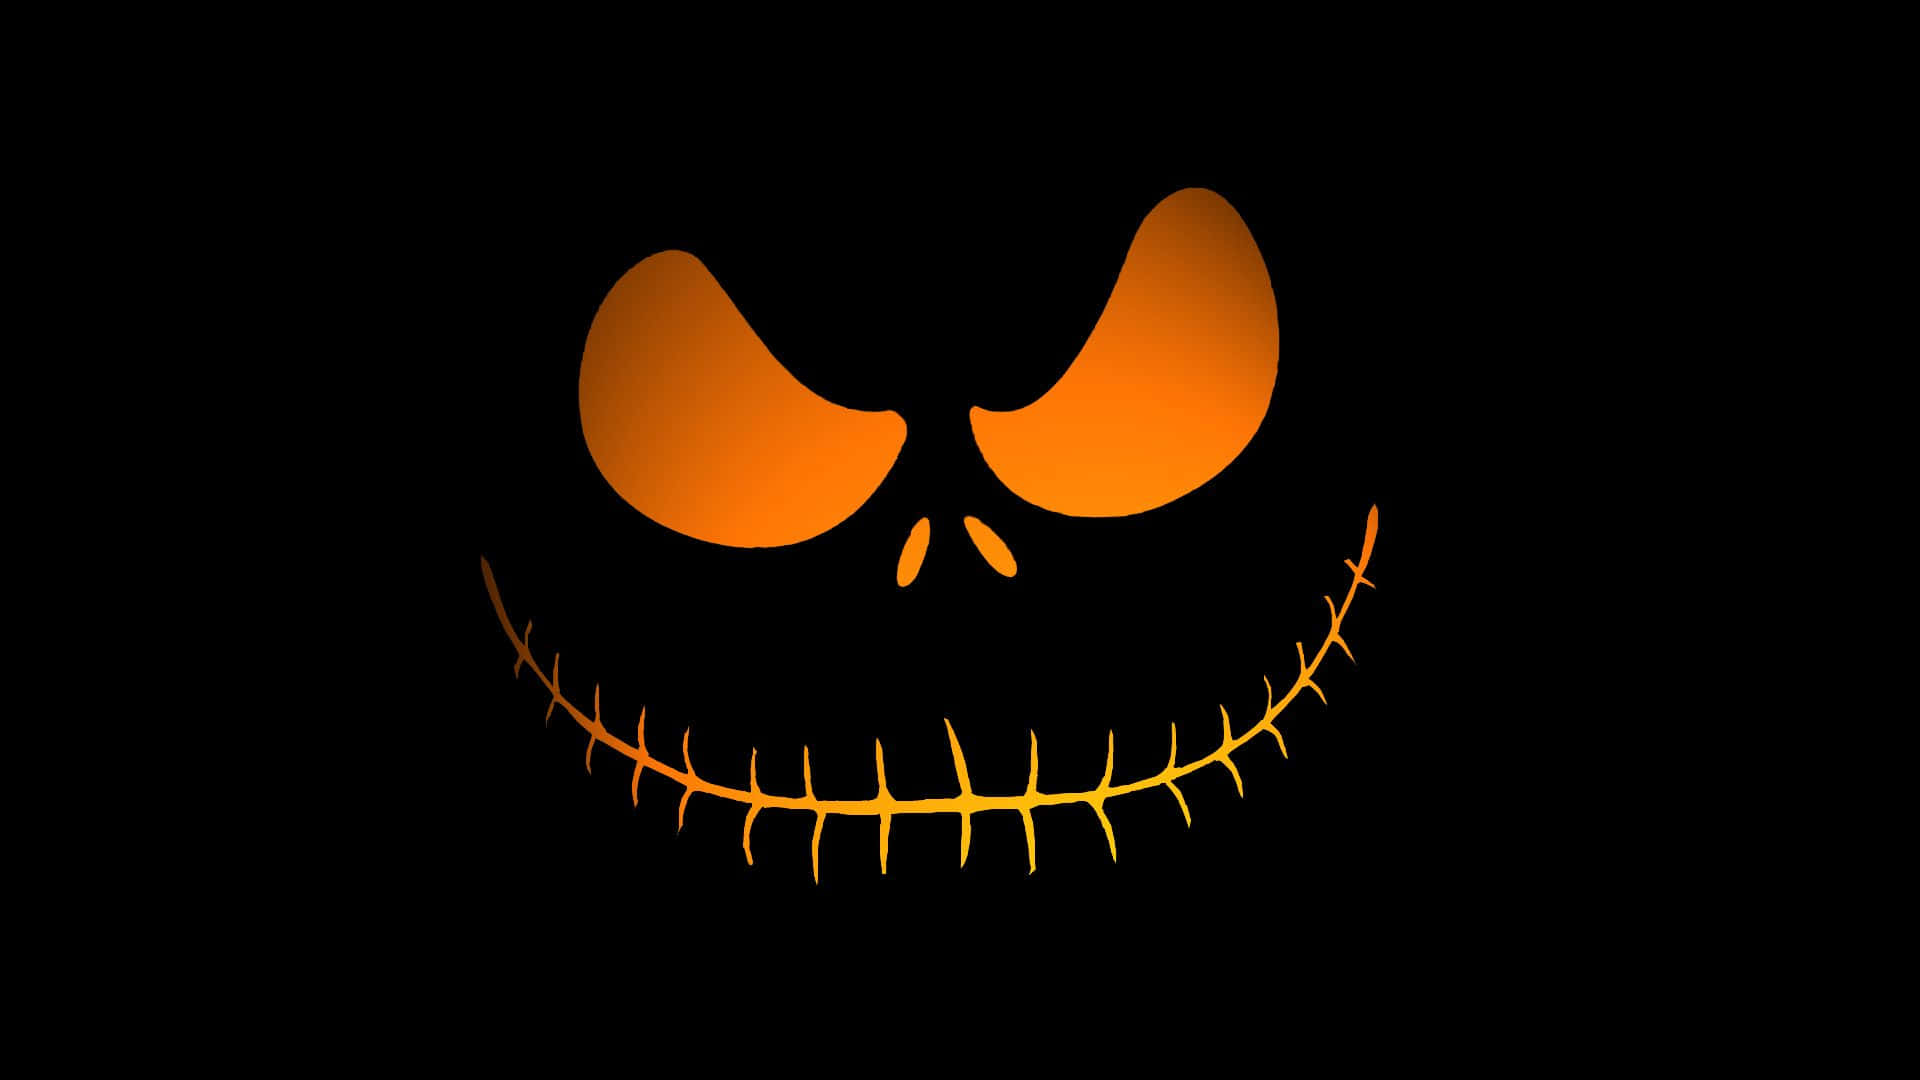 Spooky Halloween Skeleton with Glowing Eyes Wallpaper